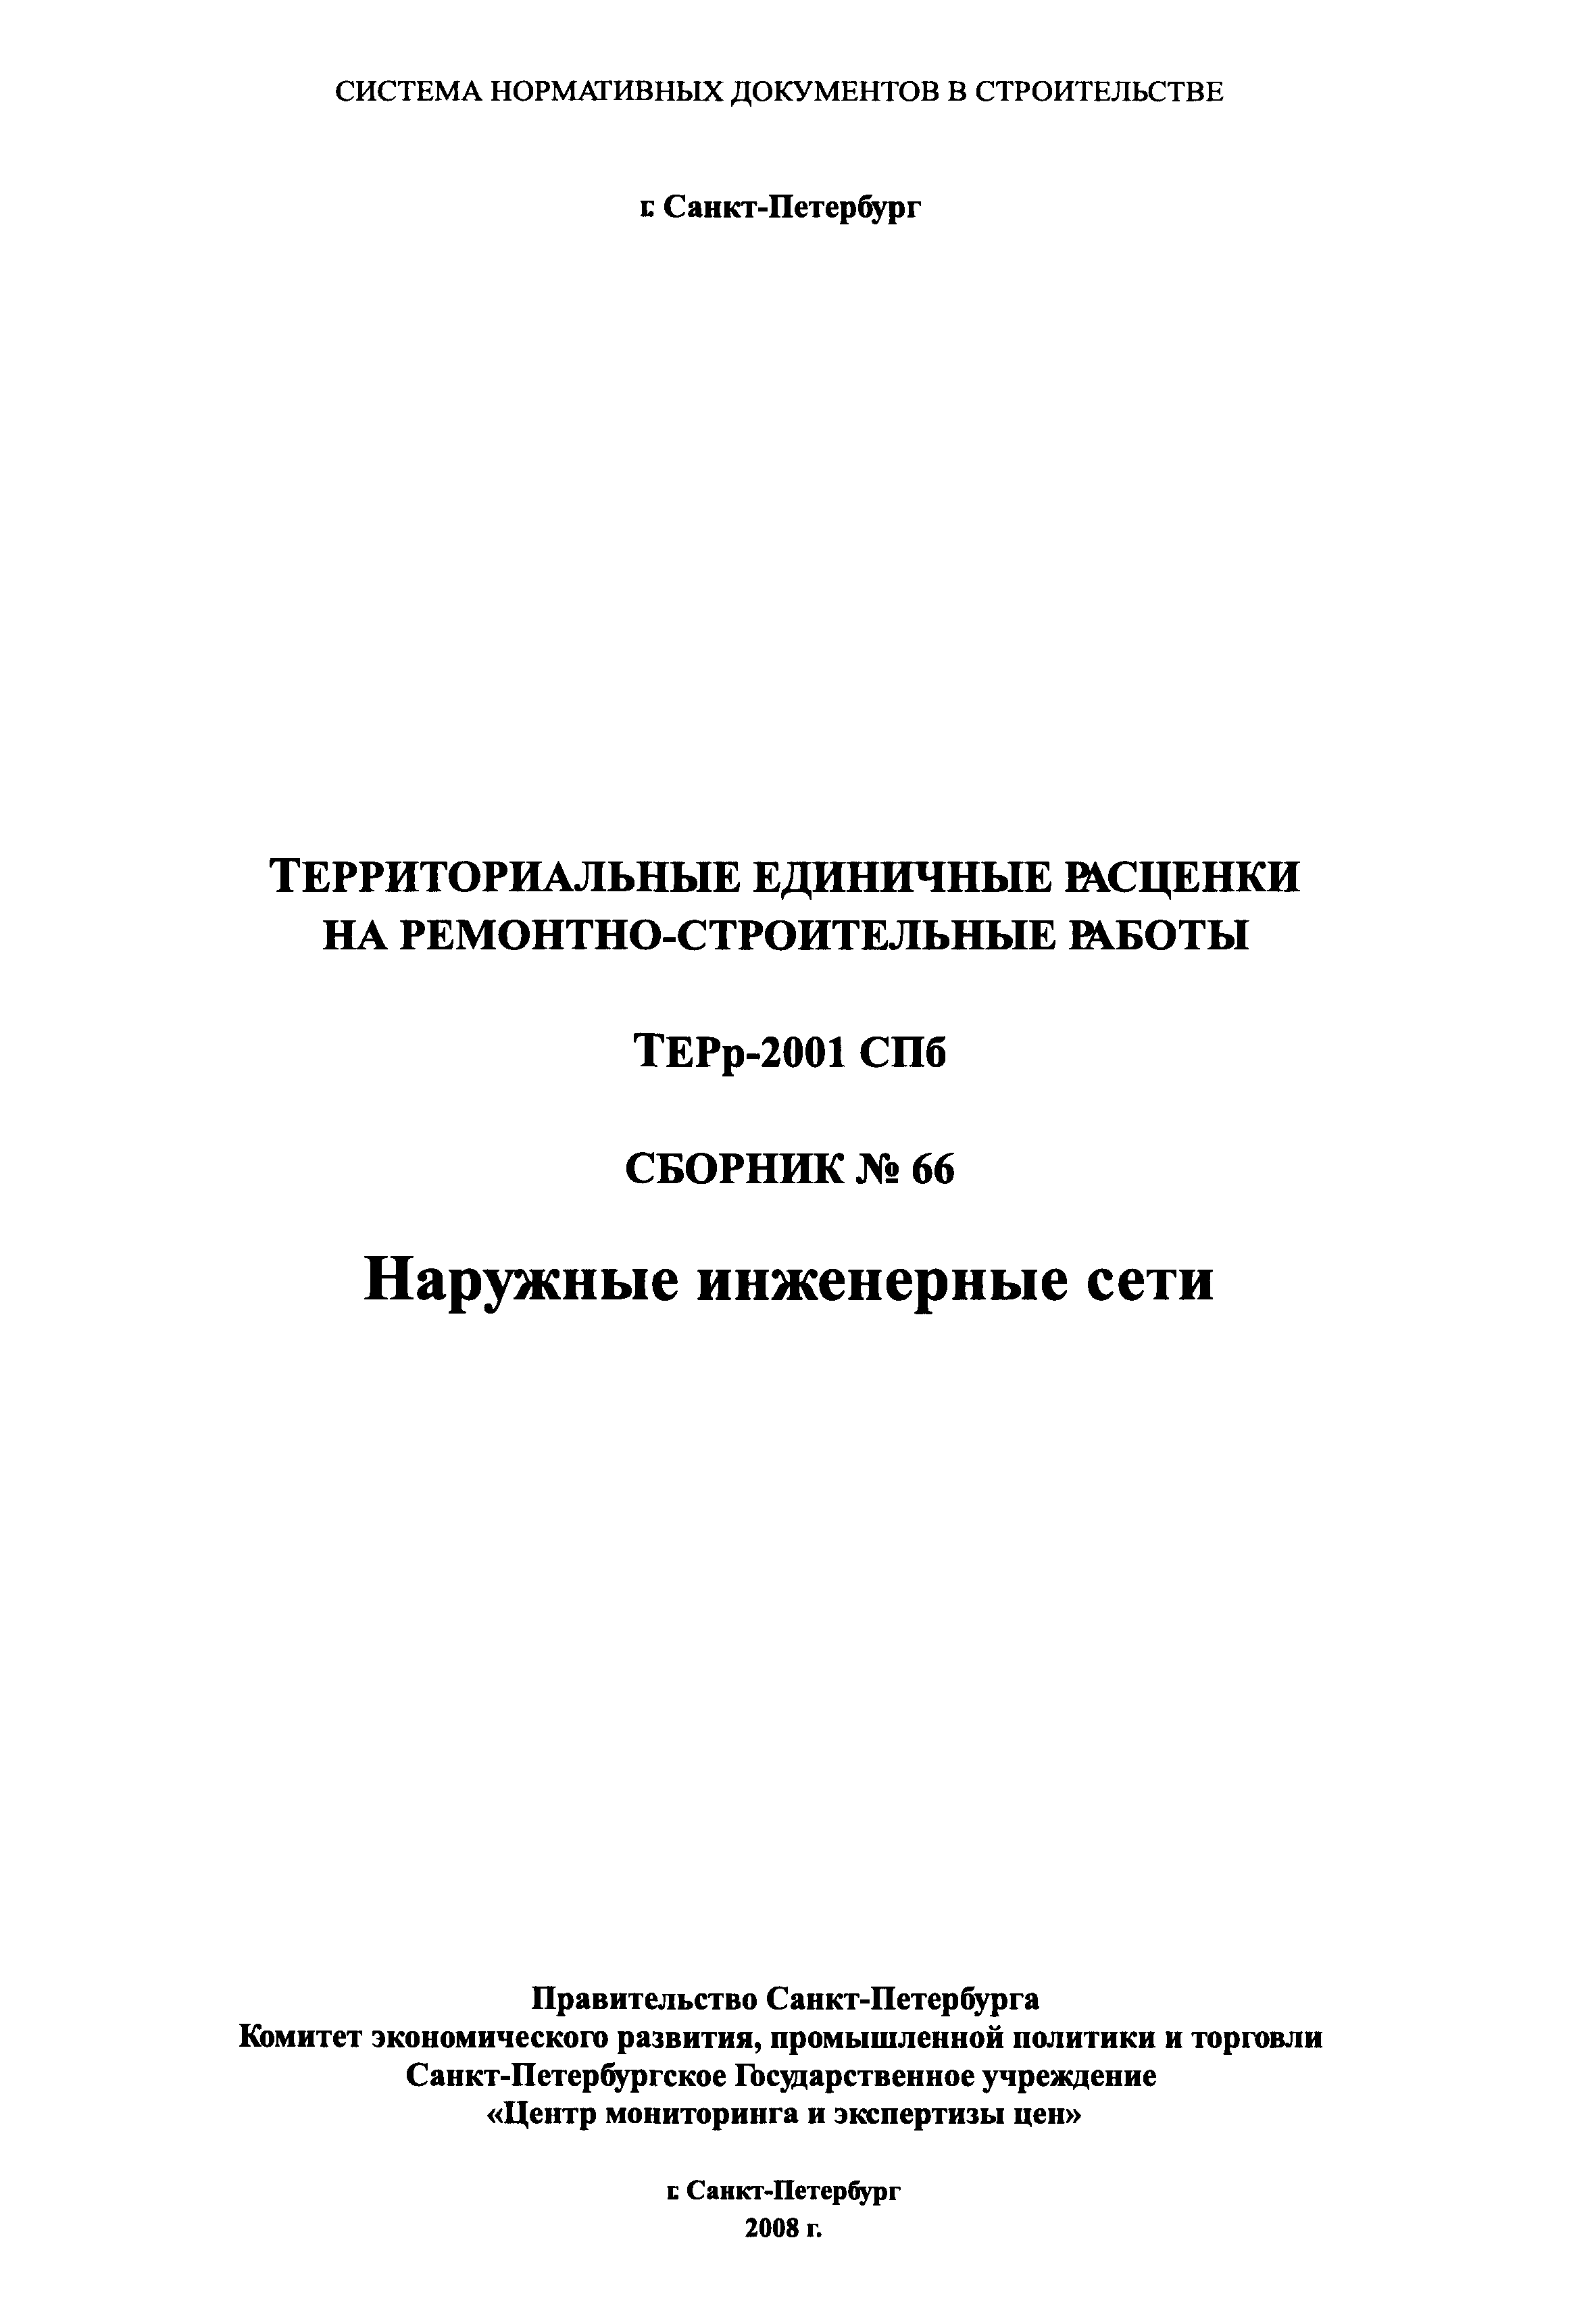 ТЕРр 2001-66 СПб